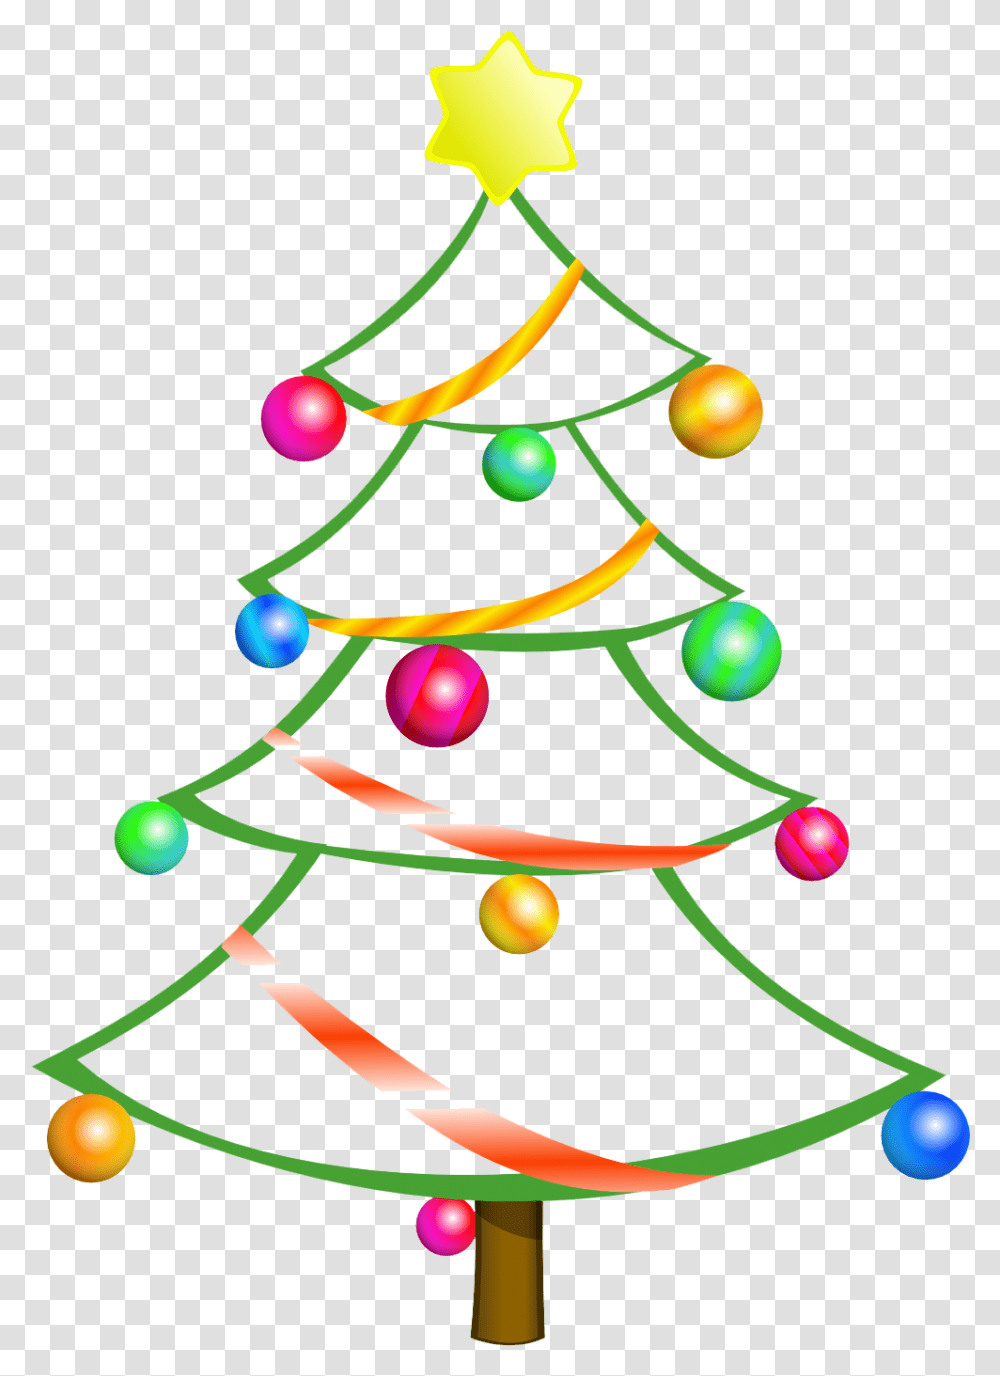 Clip Art Christmas Tree Outline Public Domain Christmas Clip Art Free, Plant, Ornament Transparent Png